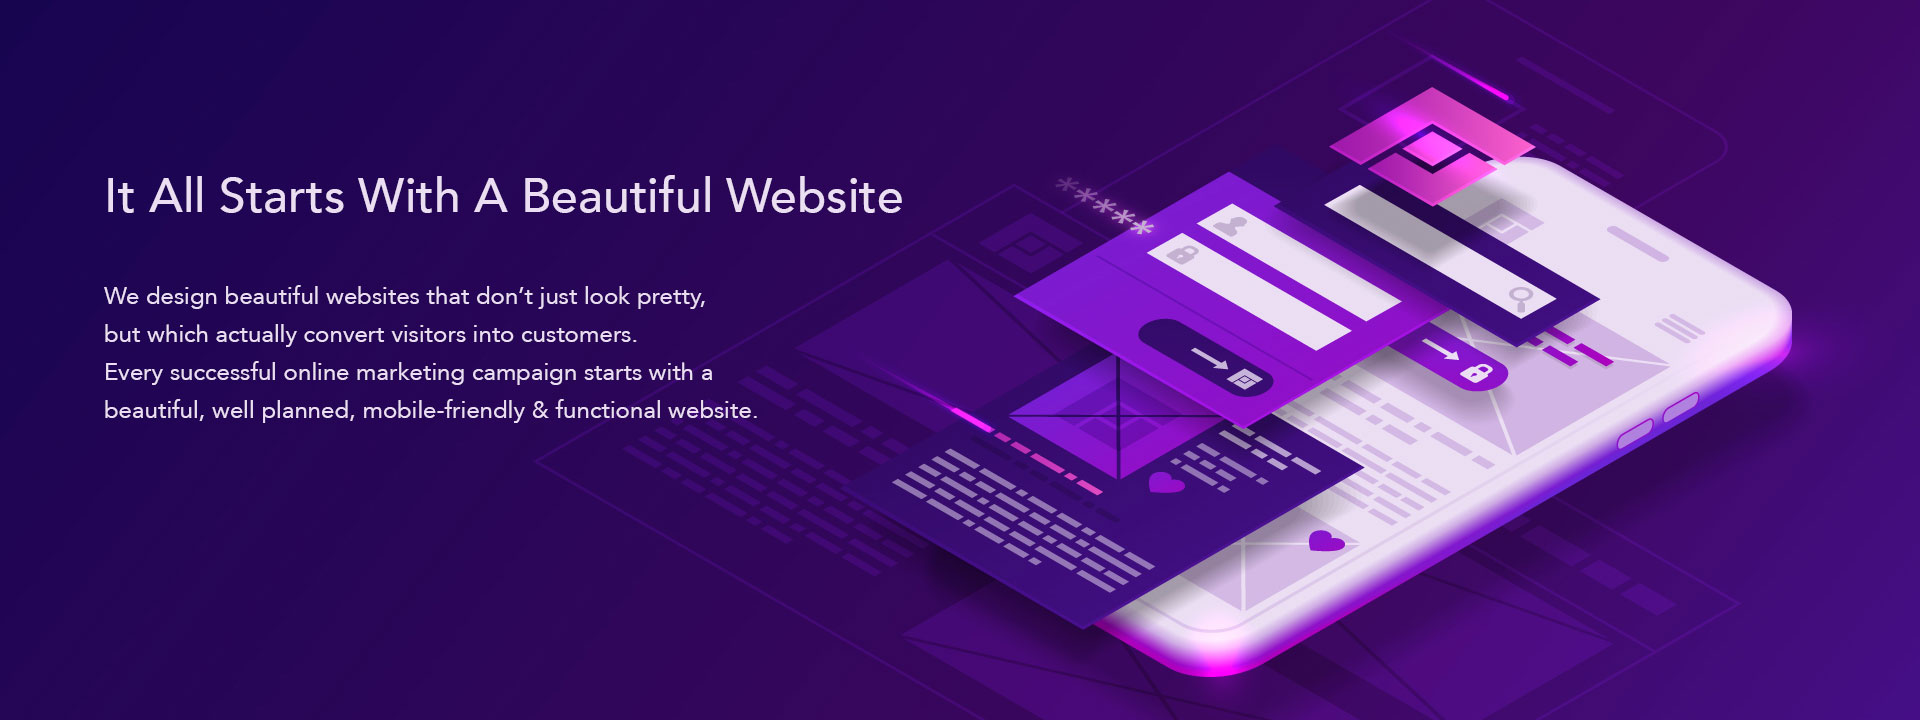 website-design-text Web Design & Development